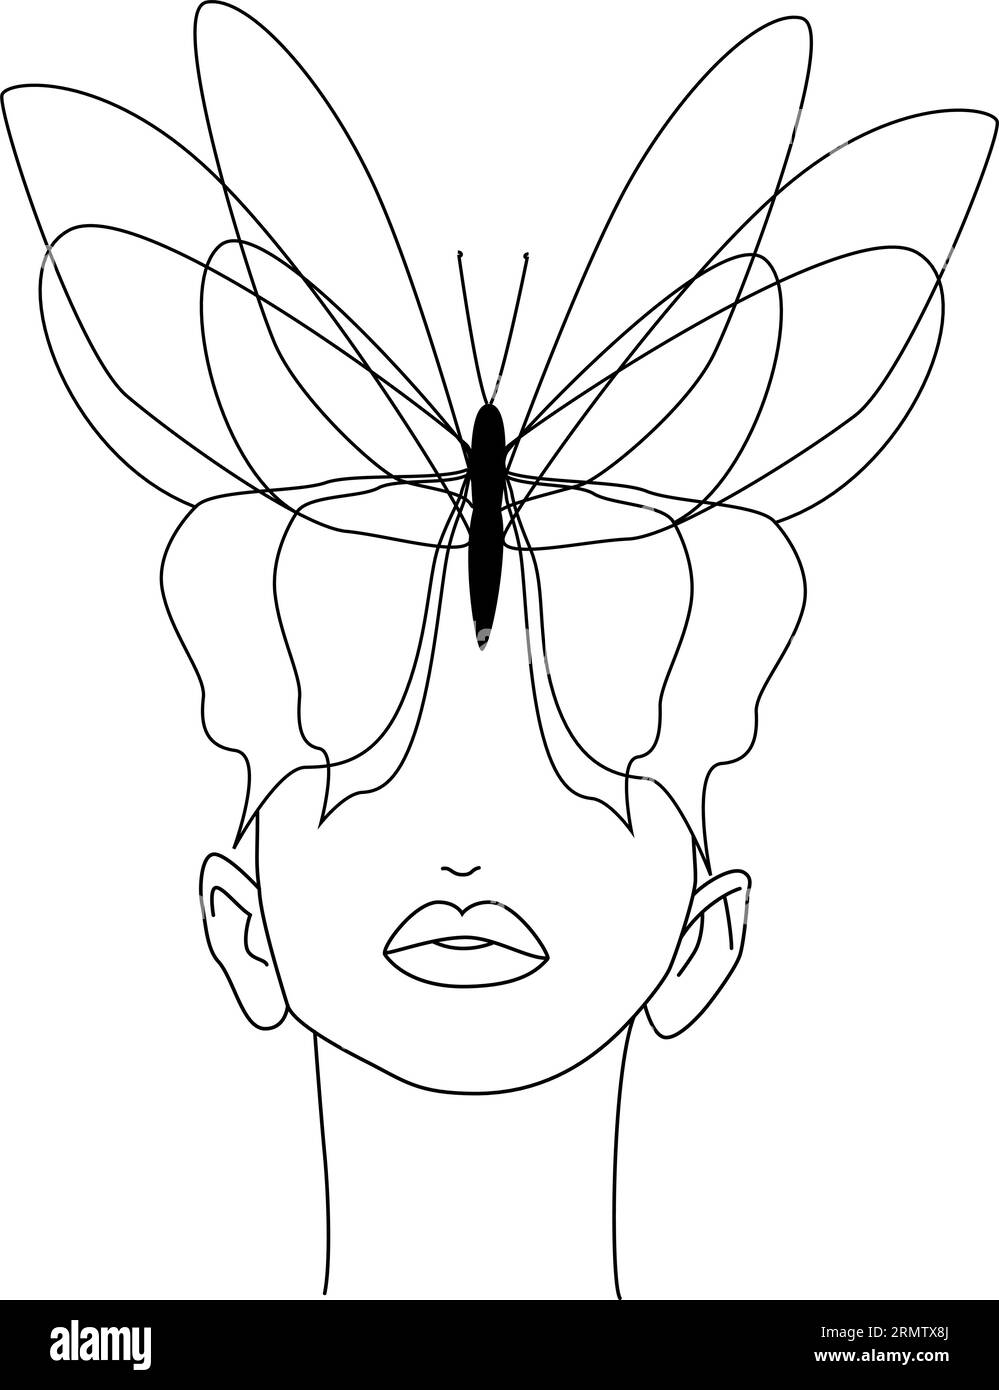 Farfalla. Faccia a farfalla, linea continua, disegno del viso e dell'acconciatura. Illustrazione Vettoriale